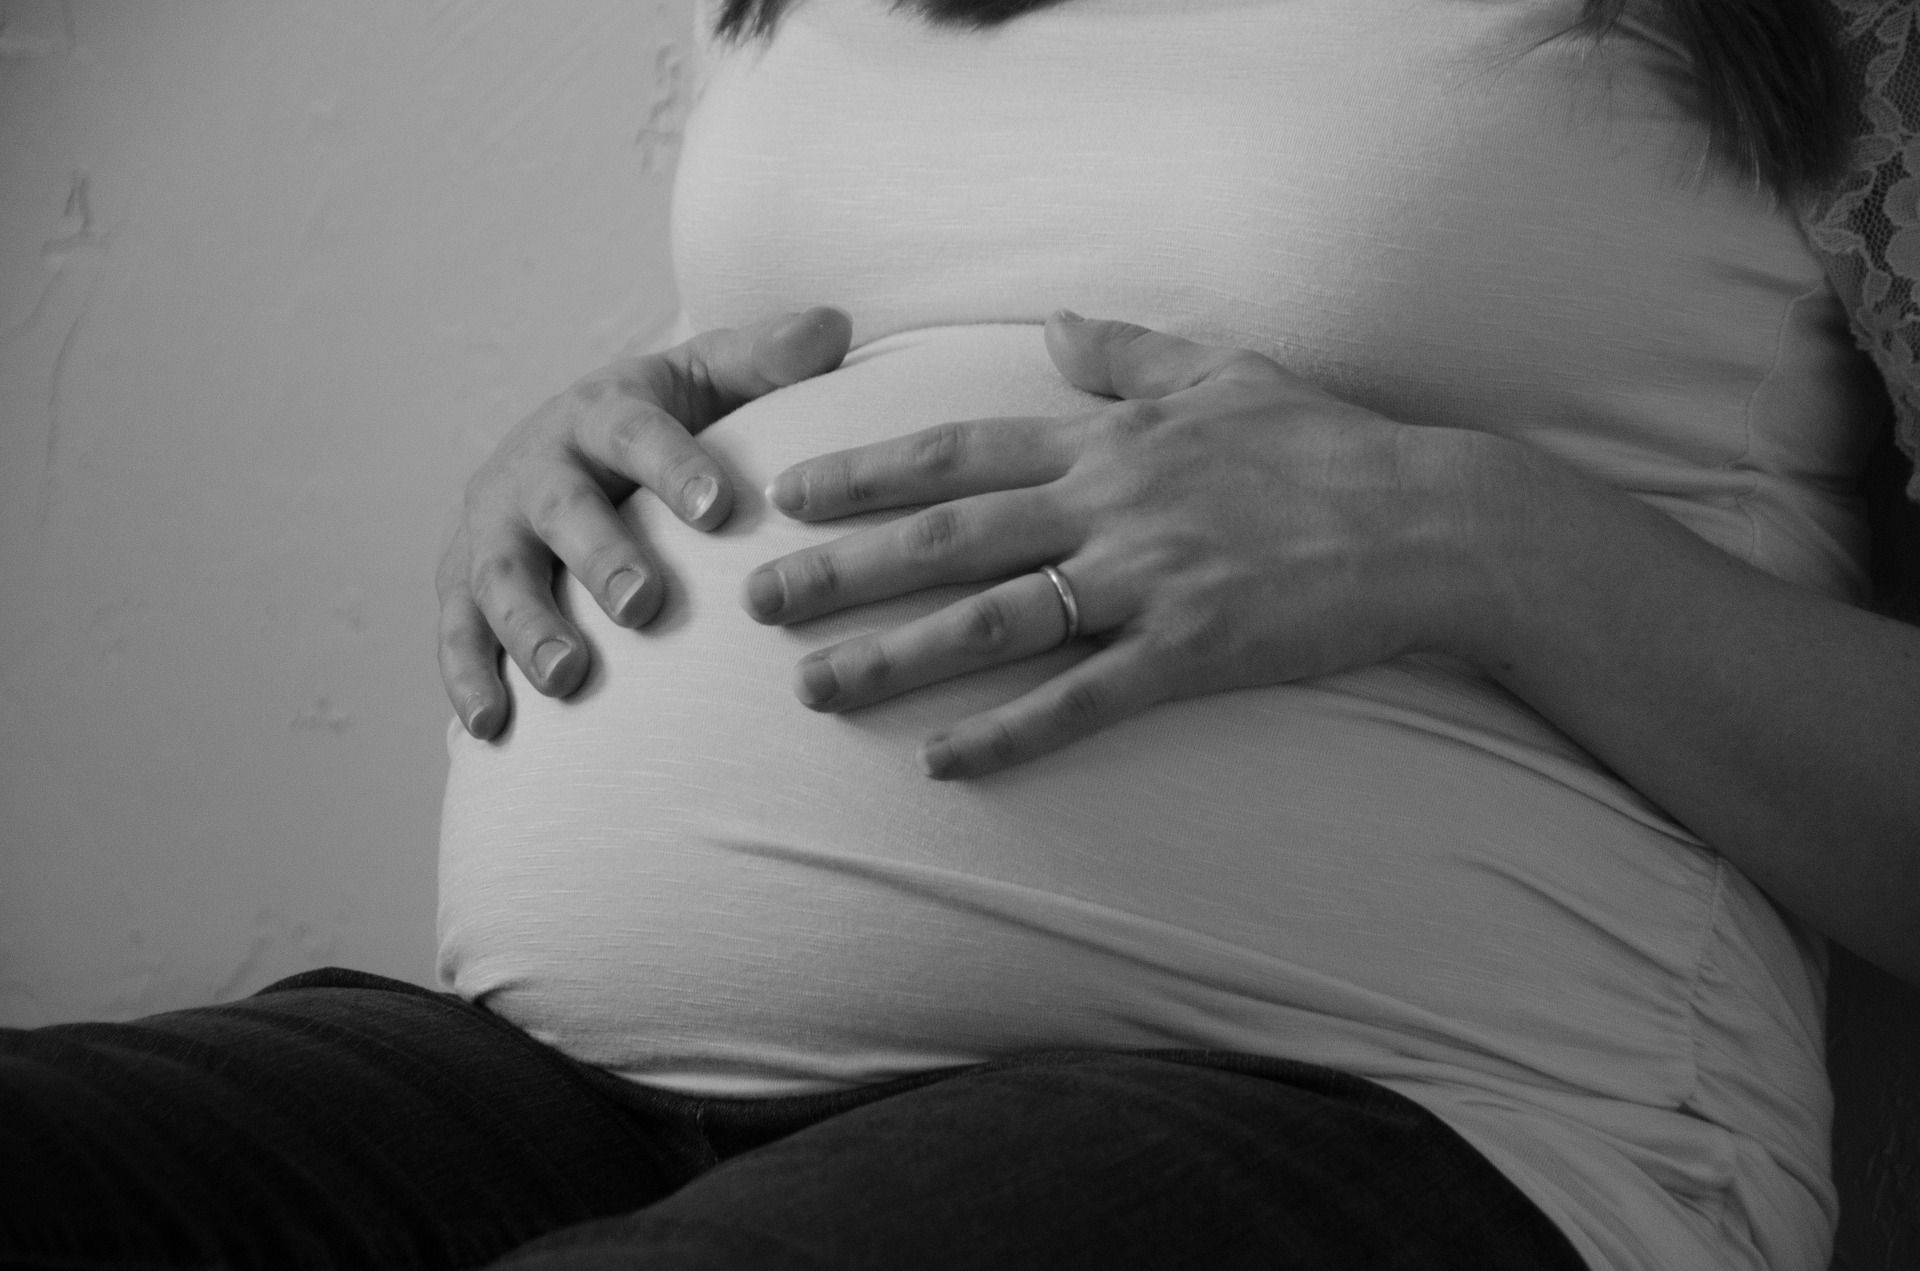 Masowanie brzucha w ciąży – czy można? Jak to robić? Kiedy szkodzi dziecku?